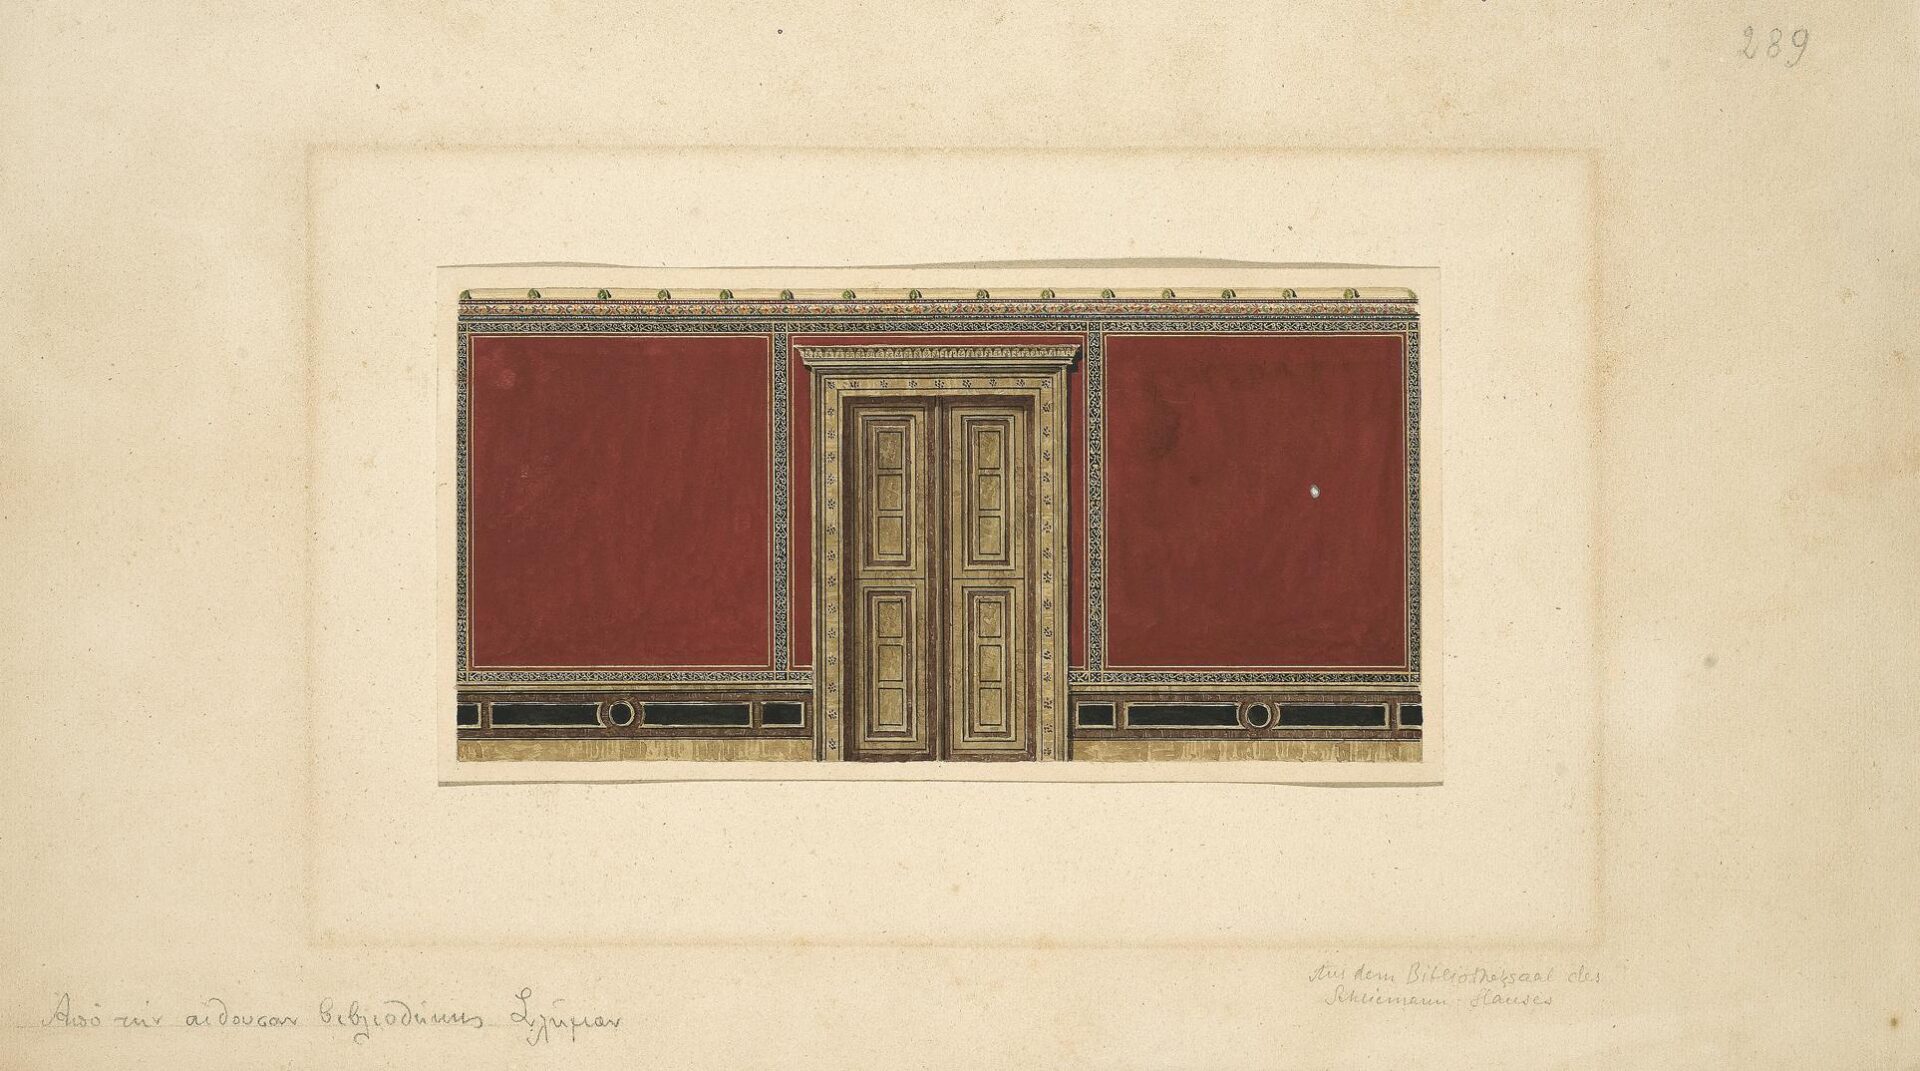 Μέγαρο Ερρίκου Σλήμαν “Ιλίου Μέλαθρον”. Διακόσμηση τοίχου με άνοιγμα πόρτας στη βιβλιοθήκη - Ziller Ernst